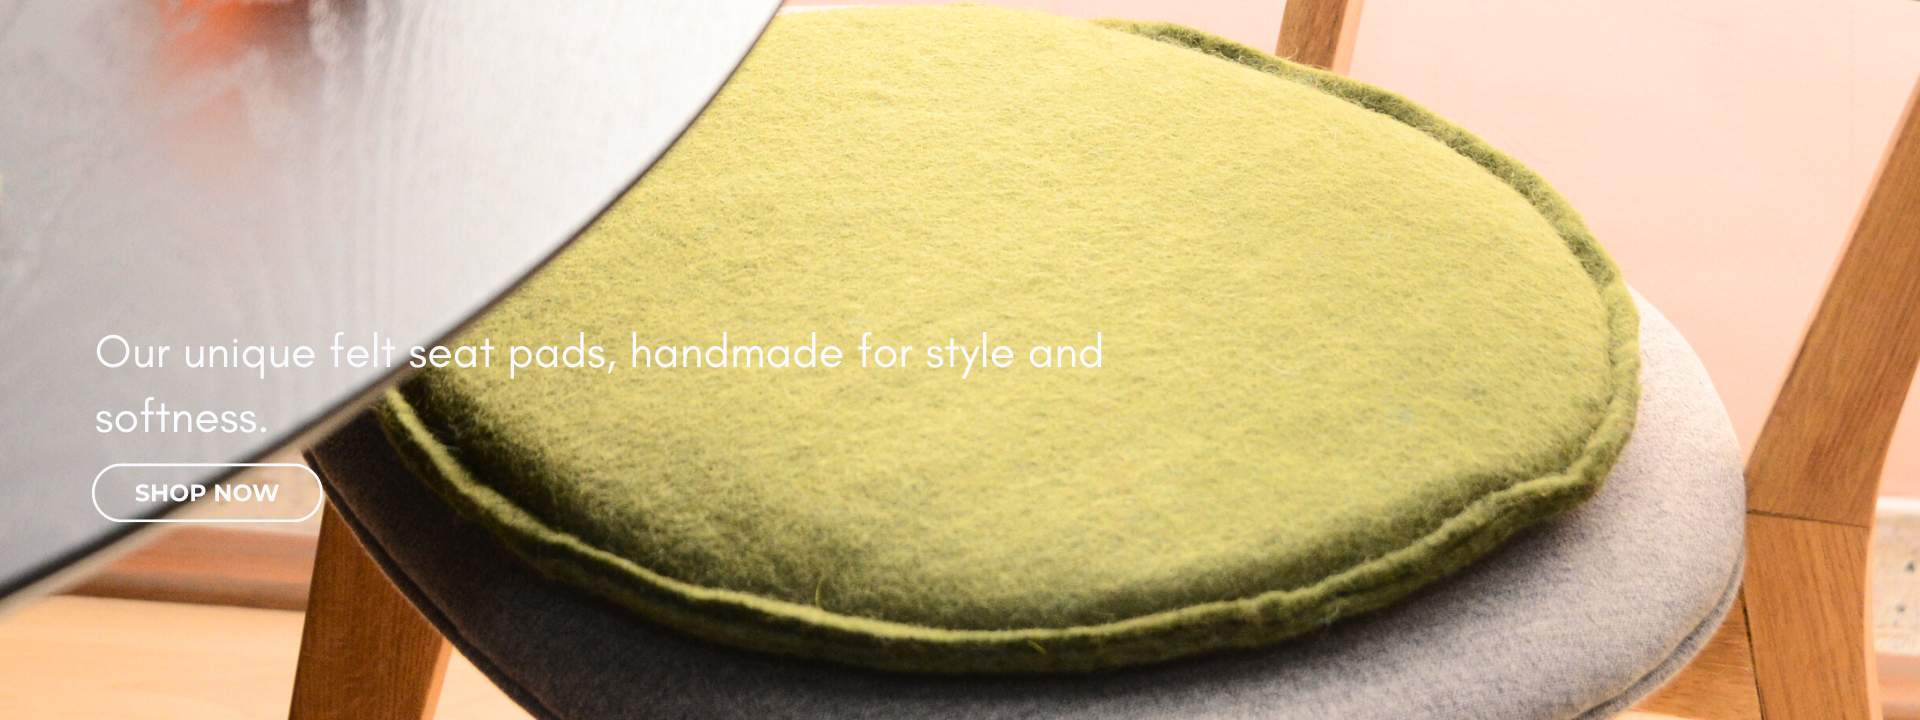 handmade felt seat pad